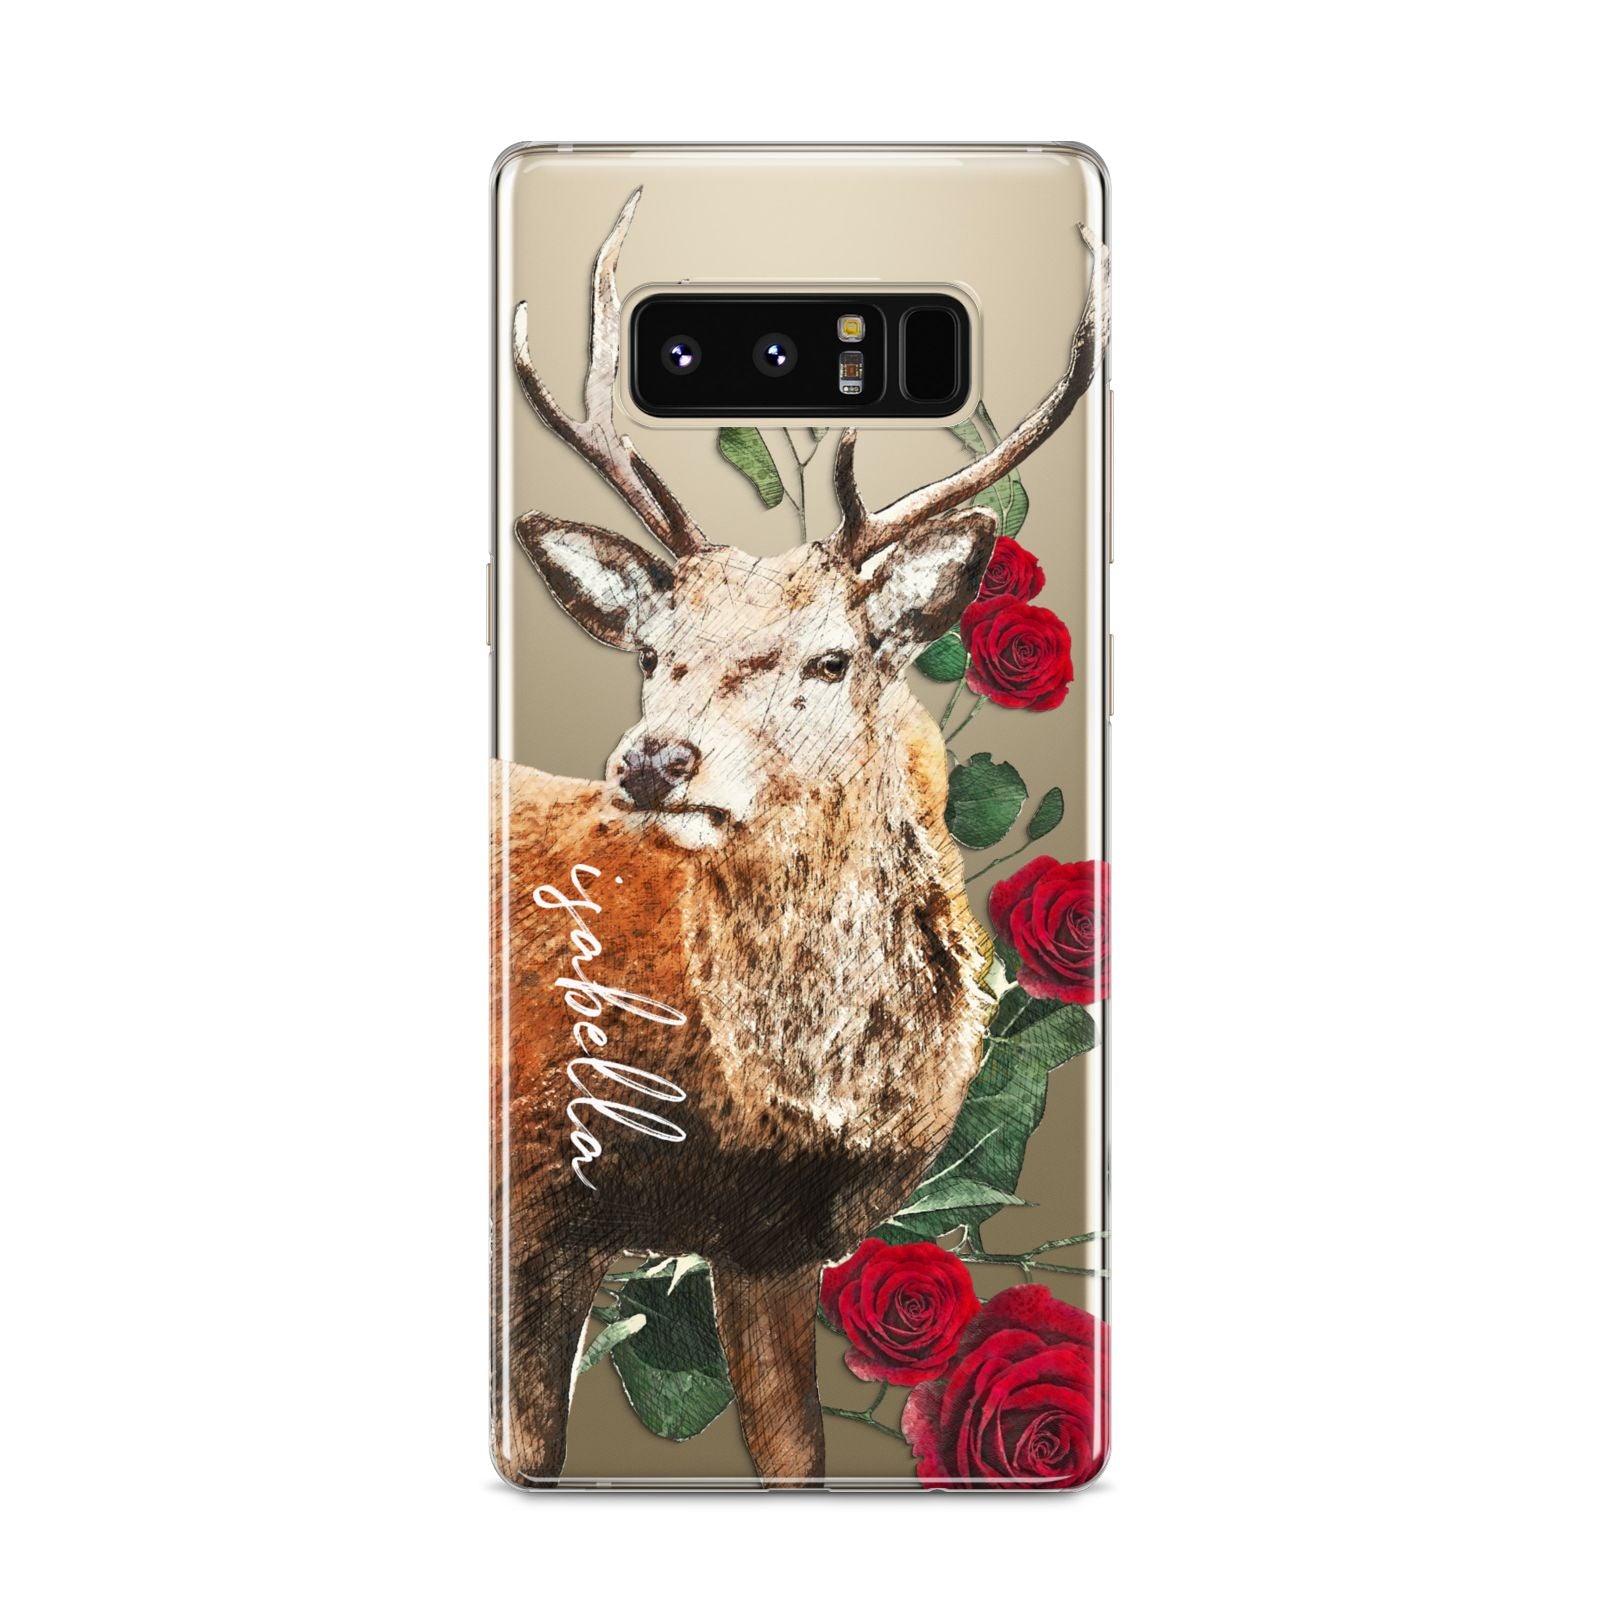 Personalised Deer Name Samsung Galaxy S8 Case